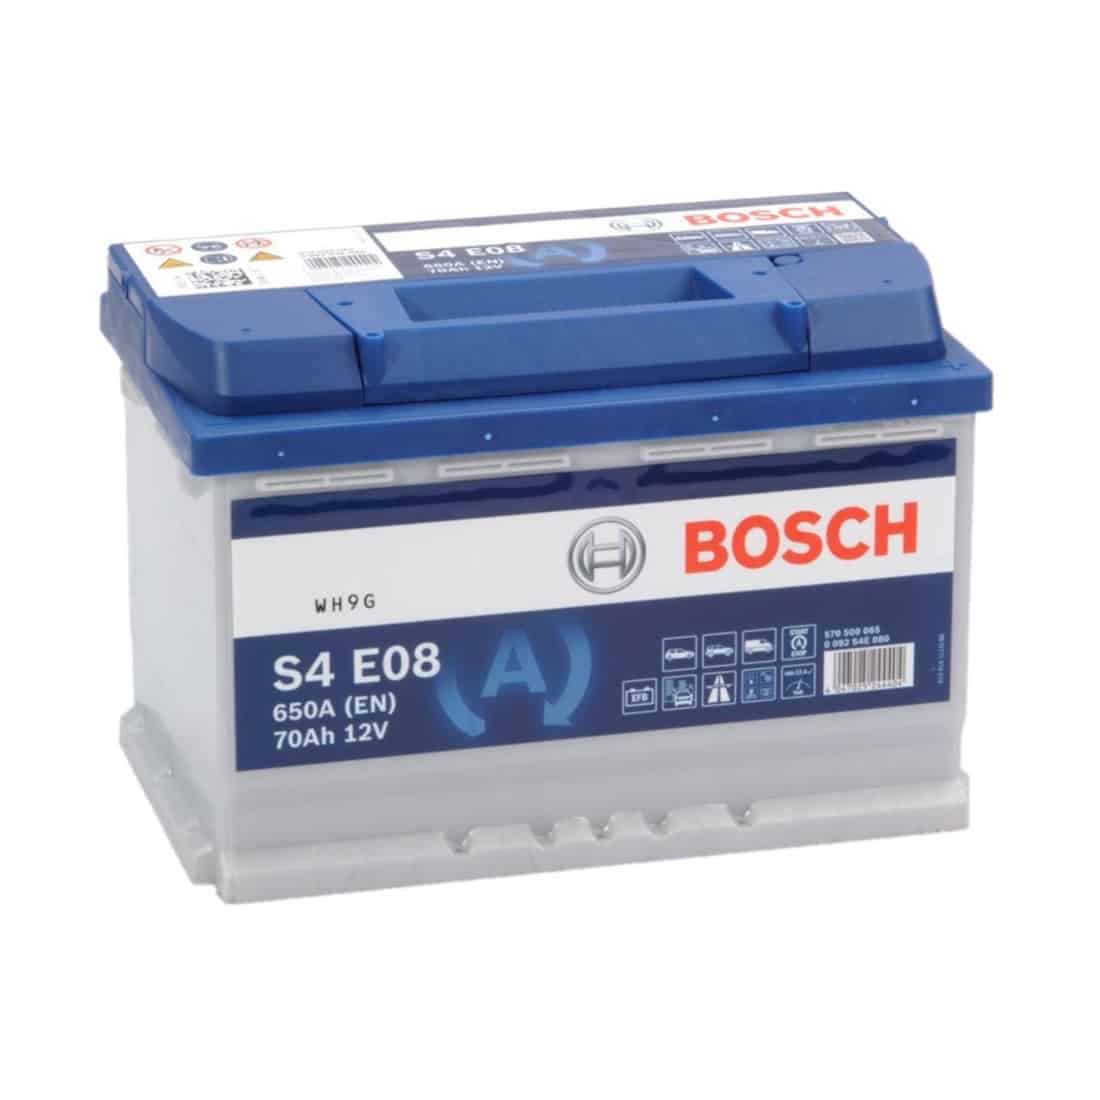 Bosch S4E08 - 70Ah accu, 760A, 12V (0 092 S4E - Accudeal